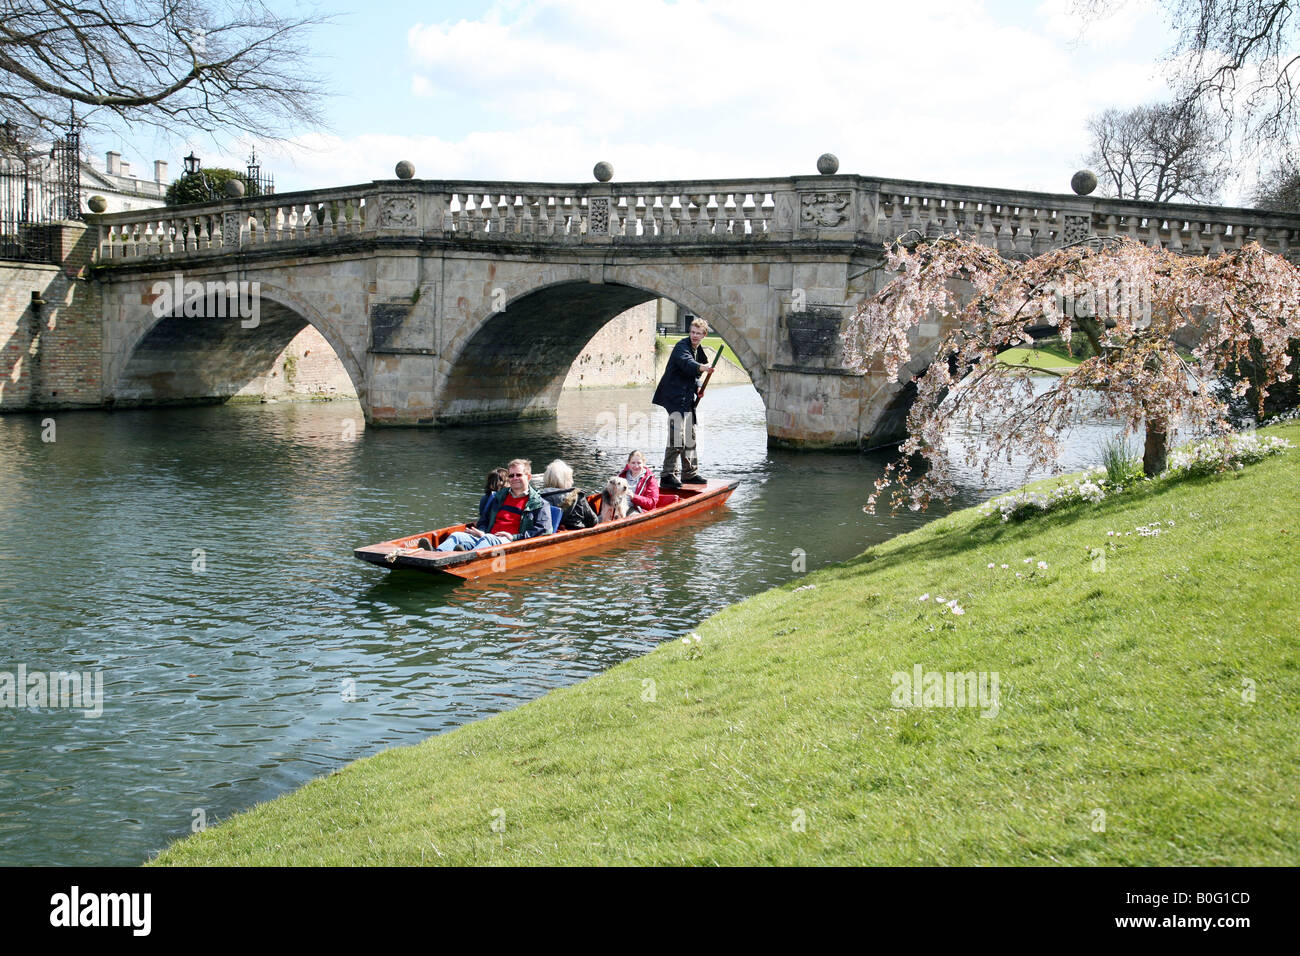 A punt pasa bajo el Clare College puente sobre el río Cam, Cambridge, Reino Unido Foto de stock